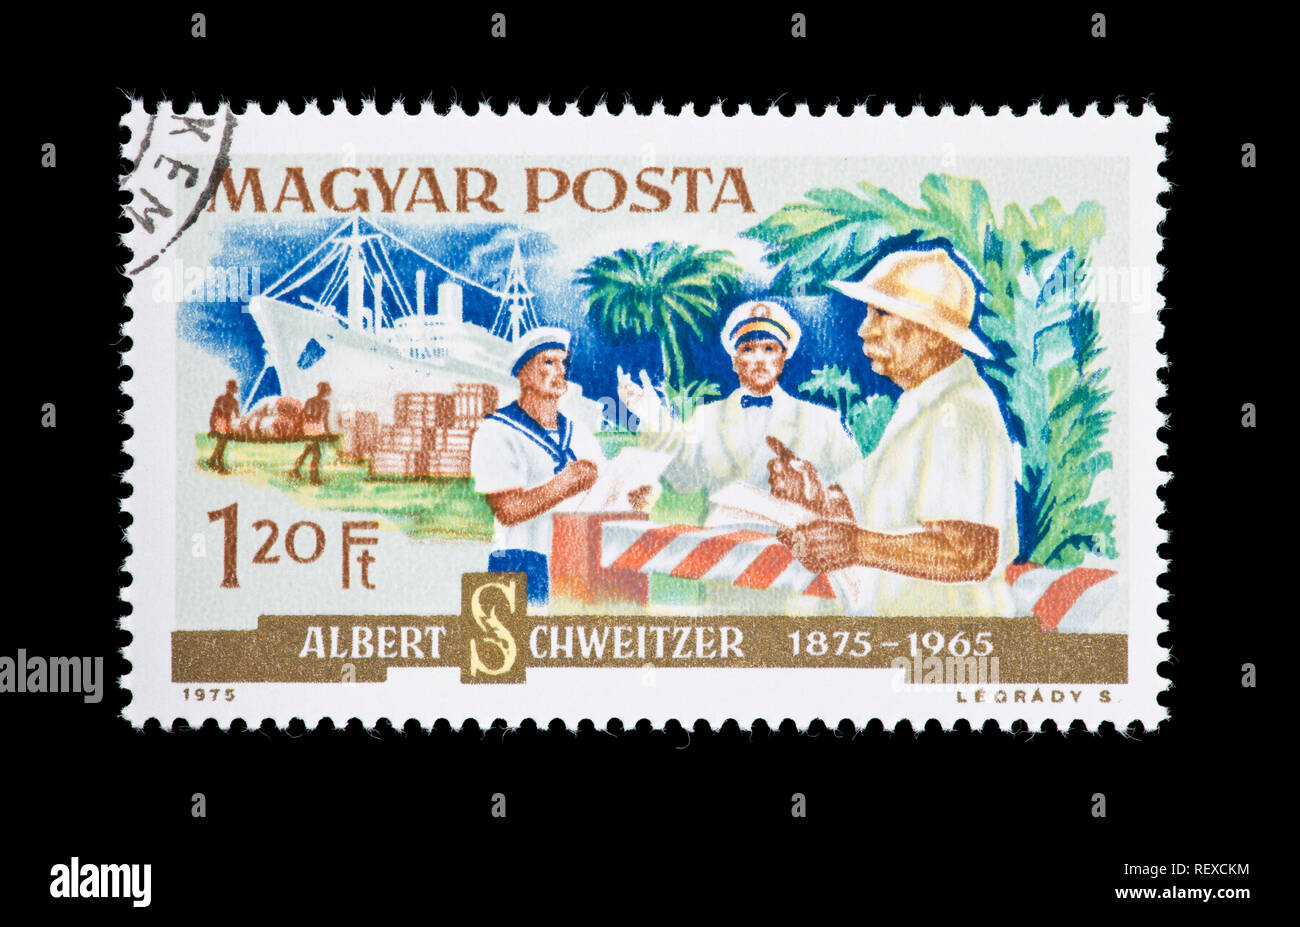 Briefmarke aus Ungarn, die medizinische Versorgung mit dem Schiff anreisen, zehn Jahre nach dem Tod von Albert Schweitzer. Stockfoto